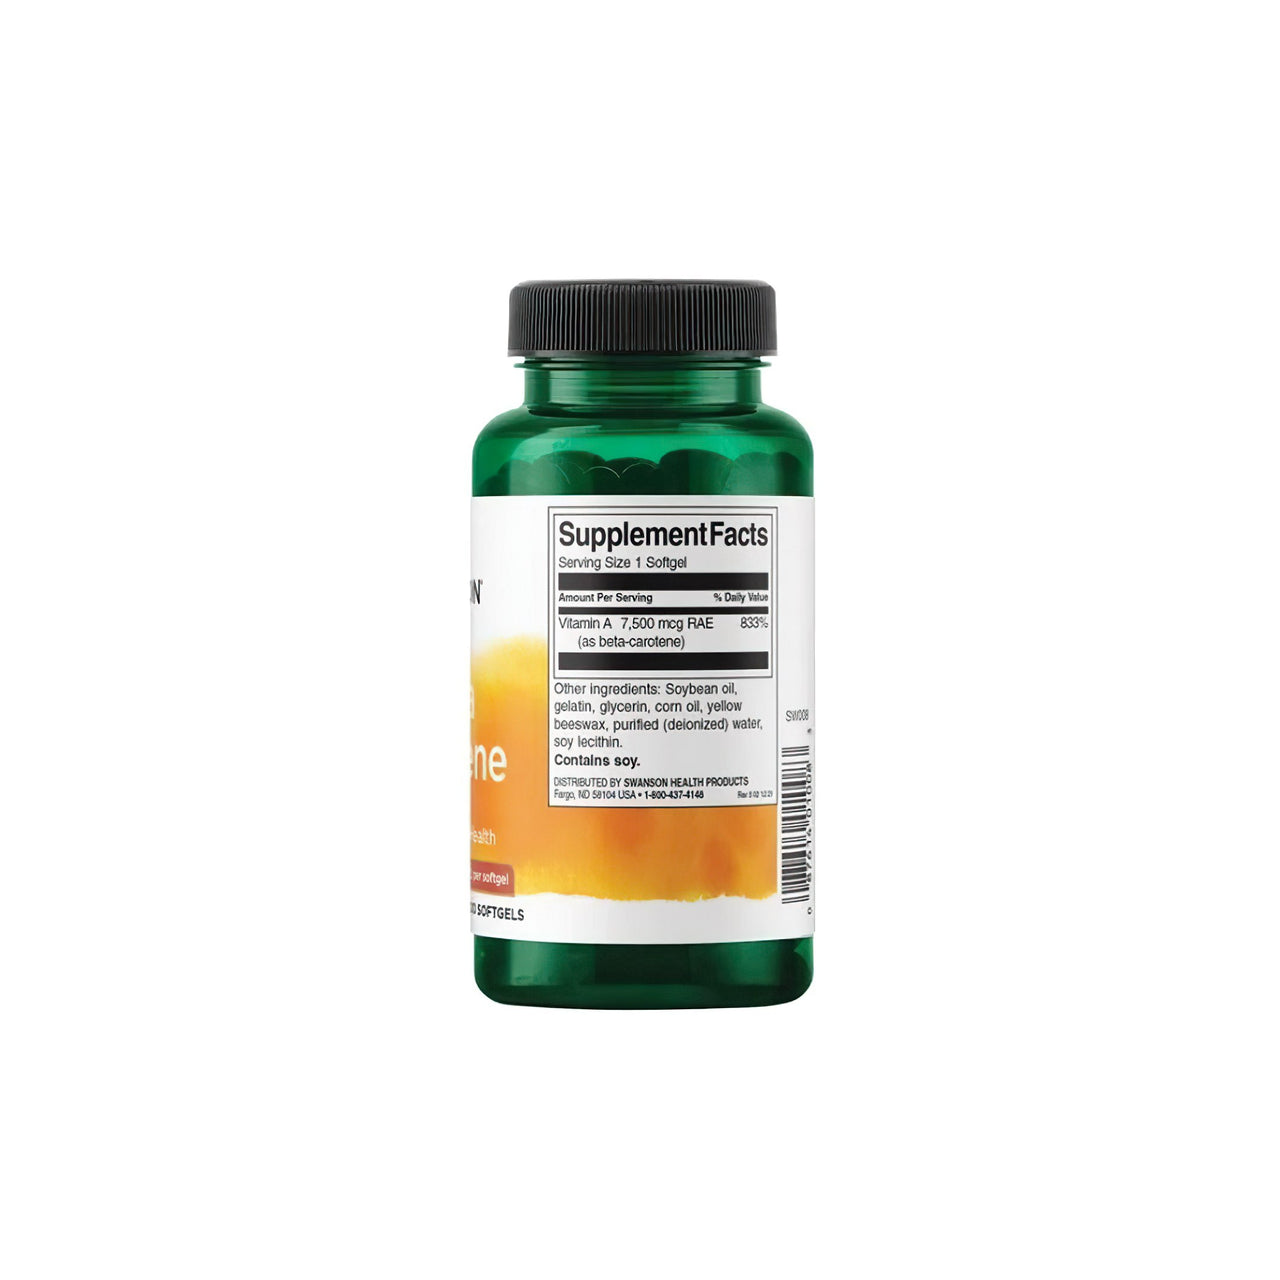 Ein Nahrungsergänzungsmittel Flasche Swanson Beta-Carotin - 25000 IU 300 softgels Vitamin A auf einem weißen Hintergrund.